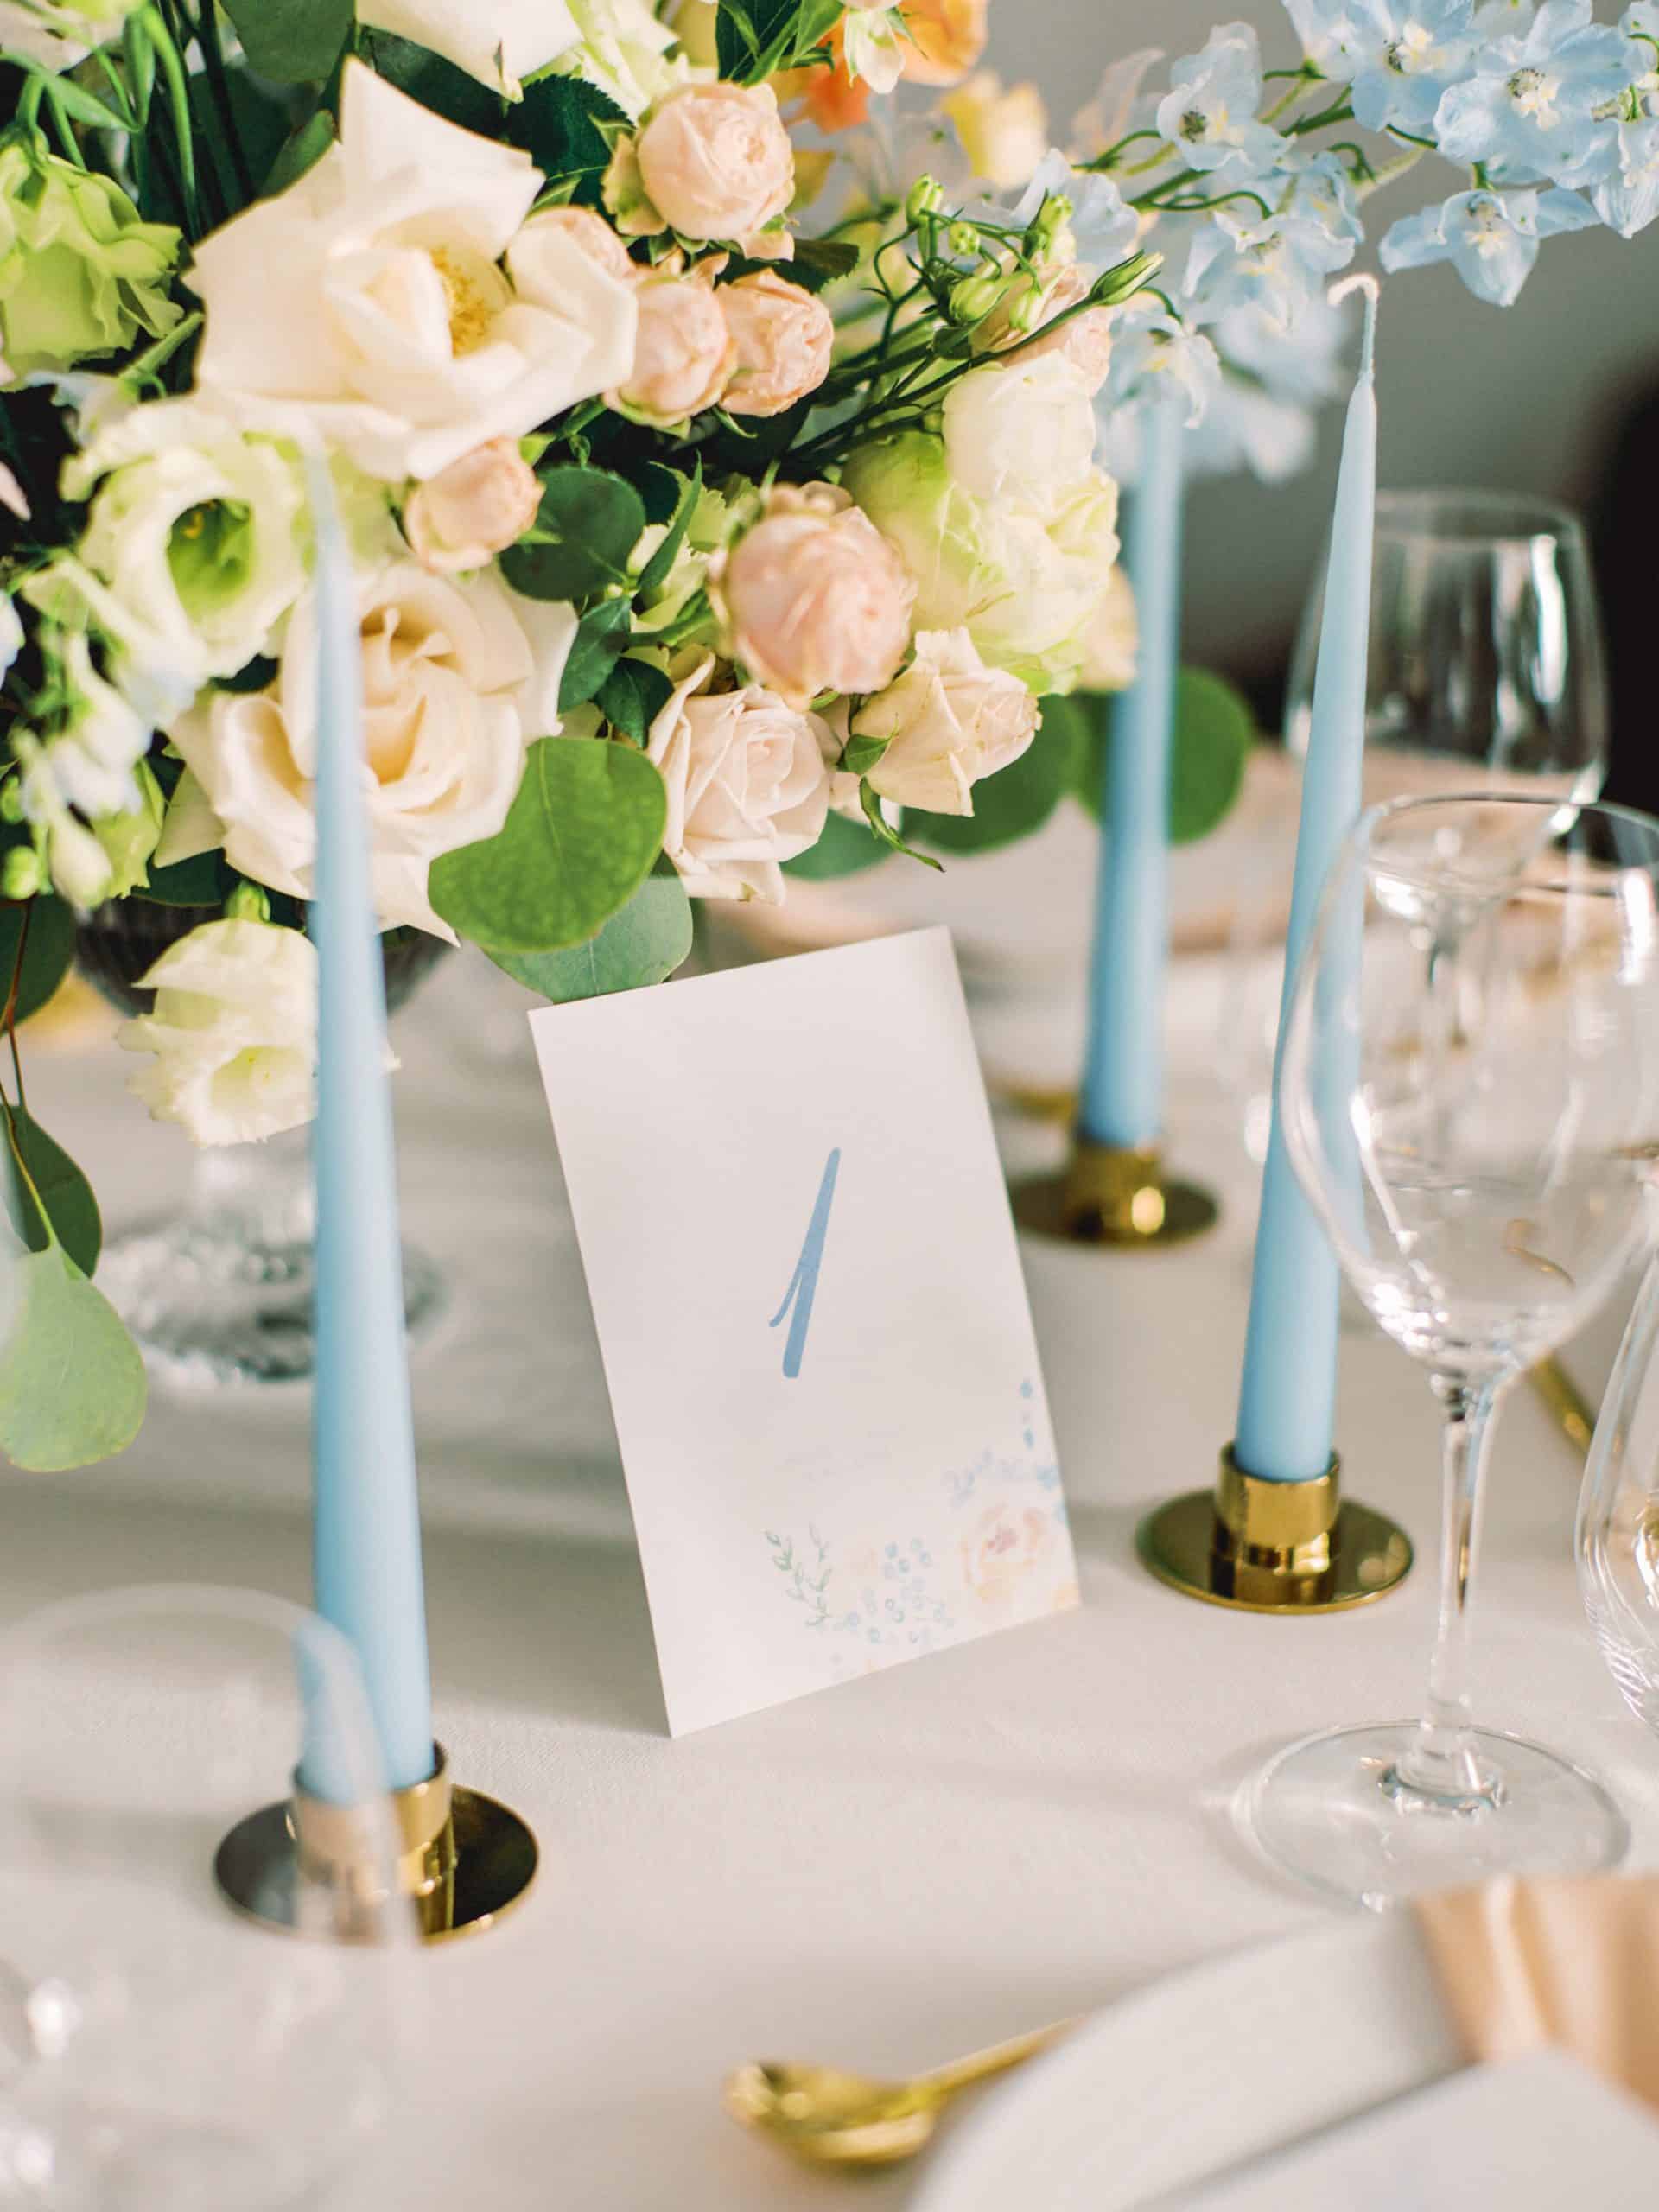 Bordnummer i lyseblå med blomsterbukett i fersken og lyseblå stearinlys